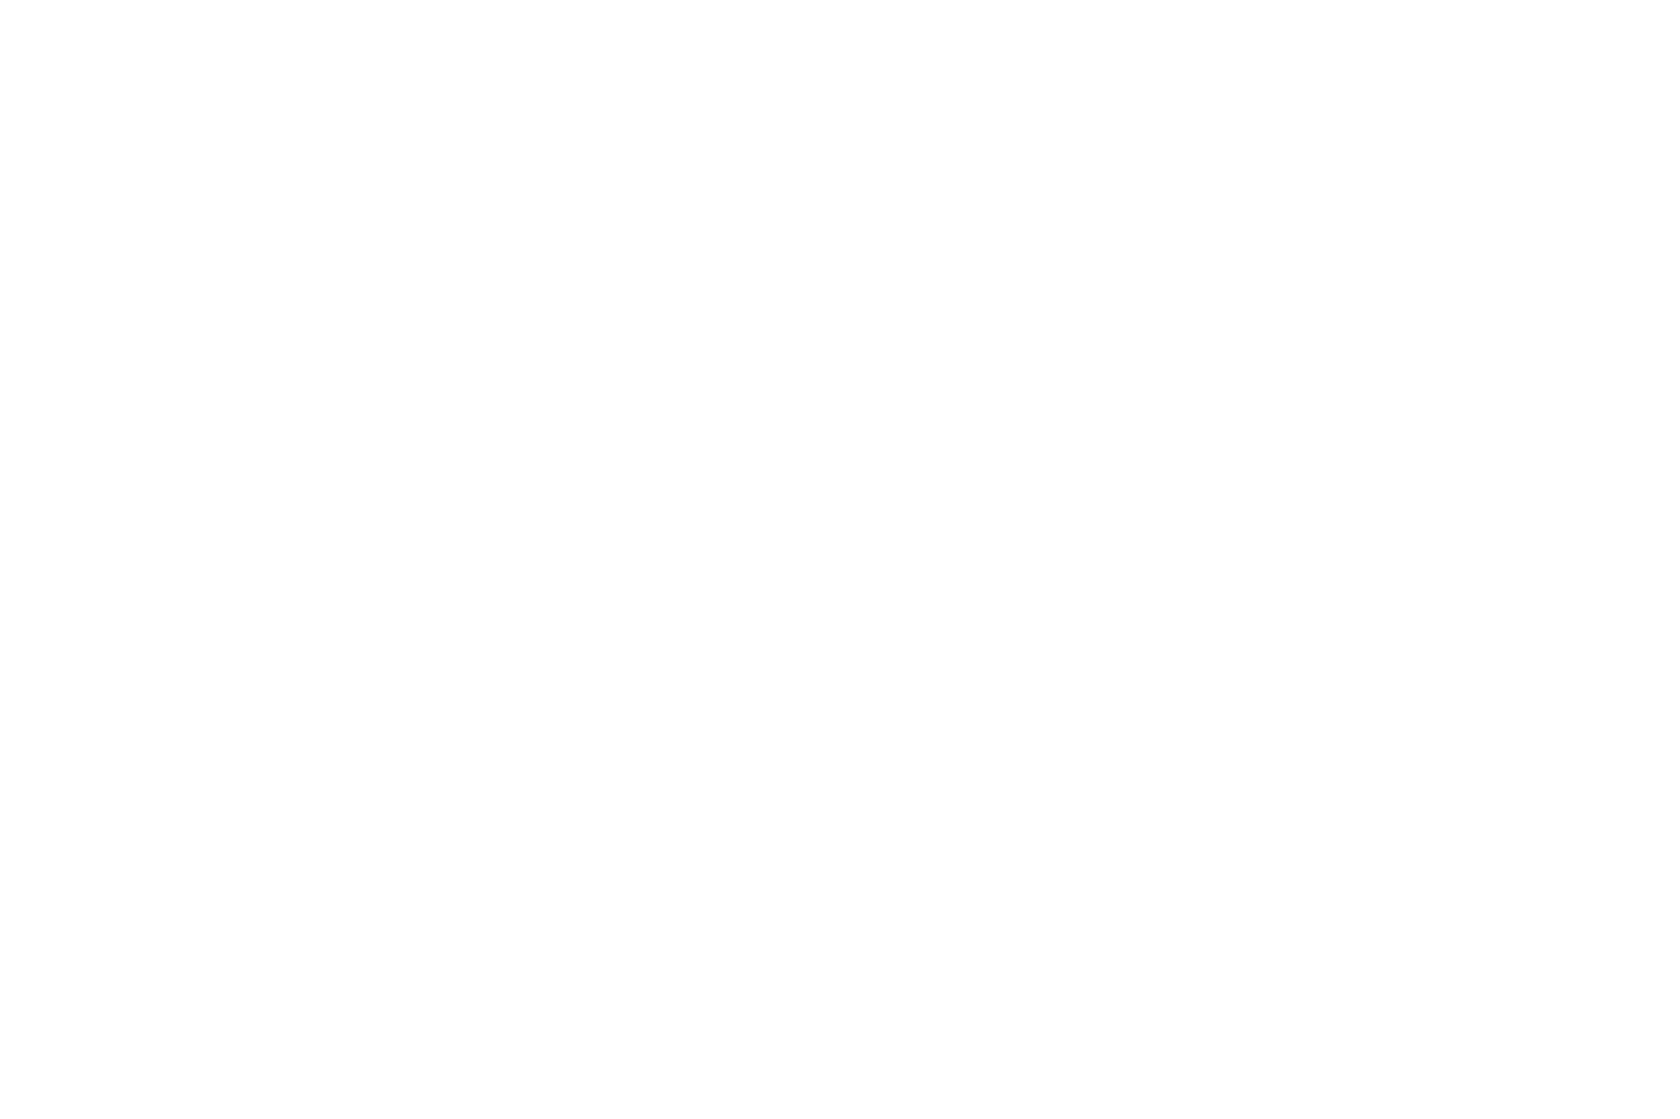 Пример логотипа, разработанного для интернет-магазина по продаже велосипедов и аксессуаров для портфолио веб дизайнера